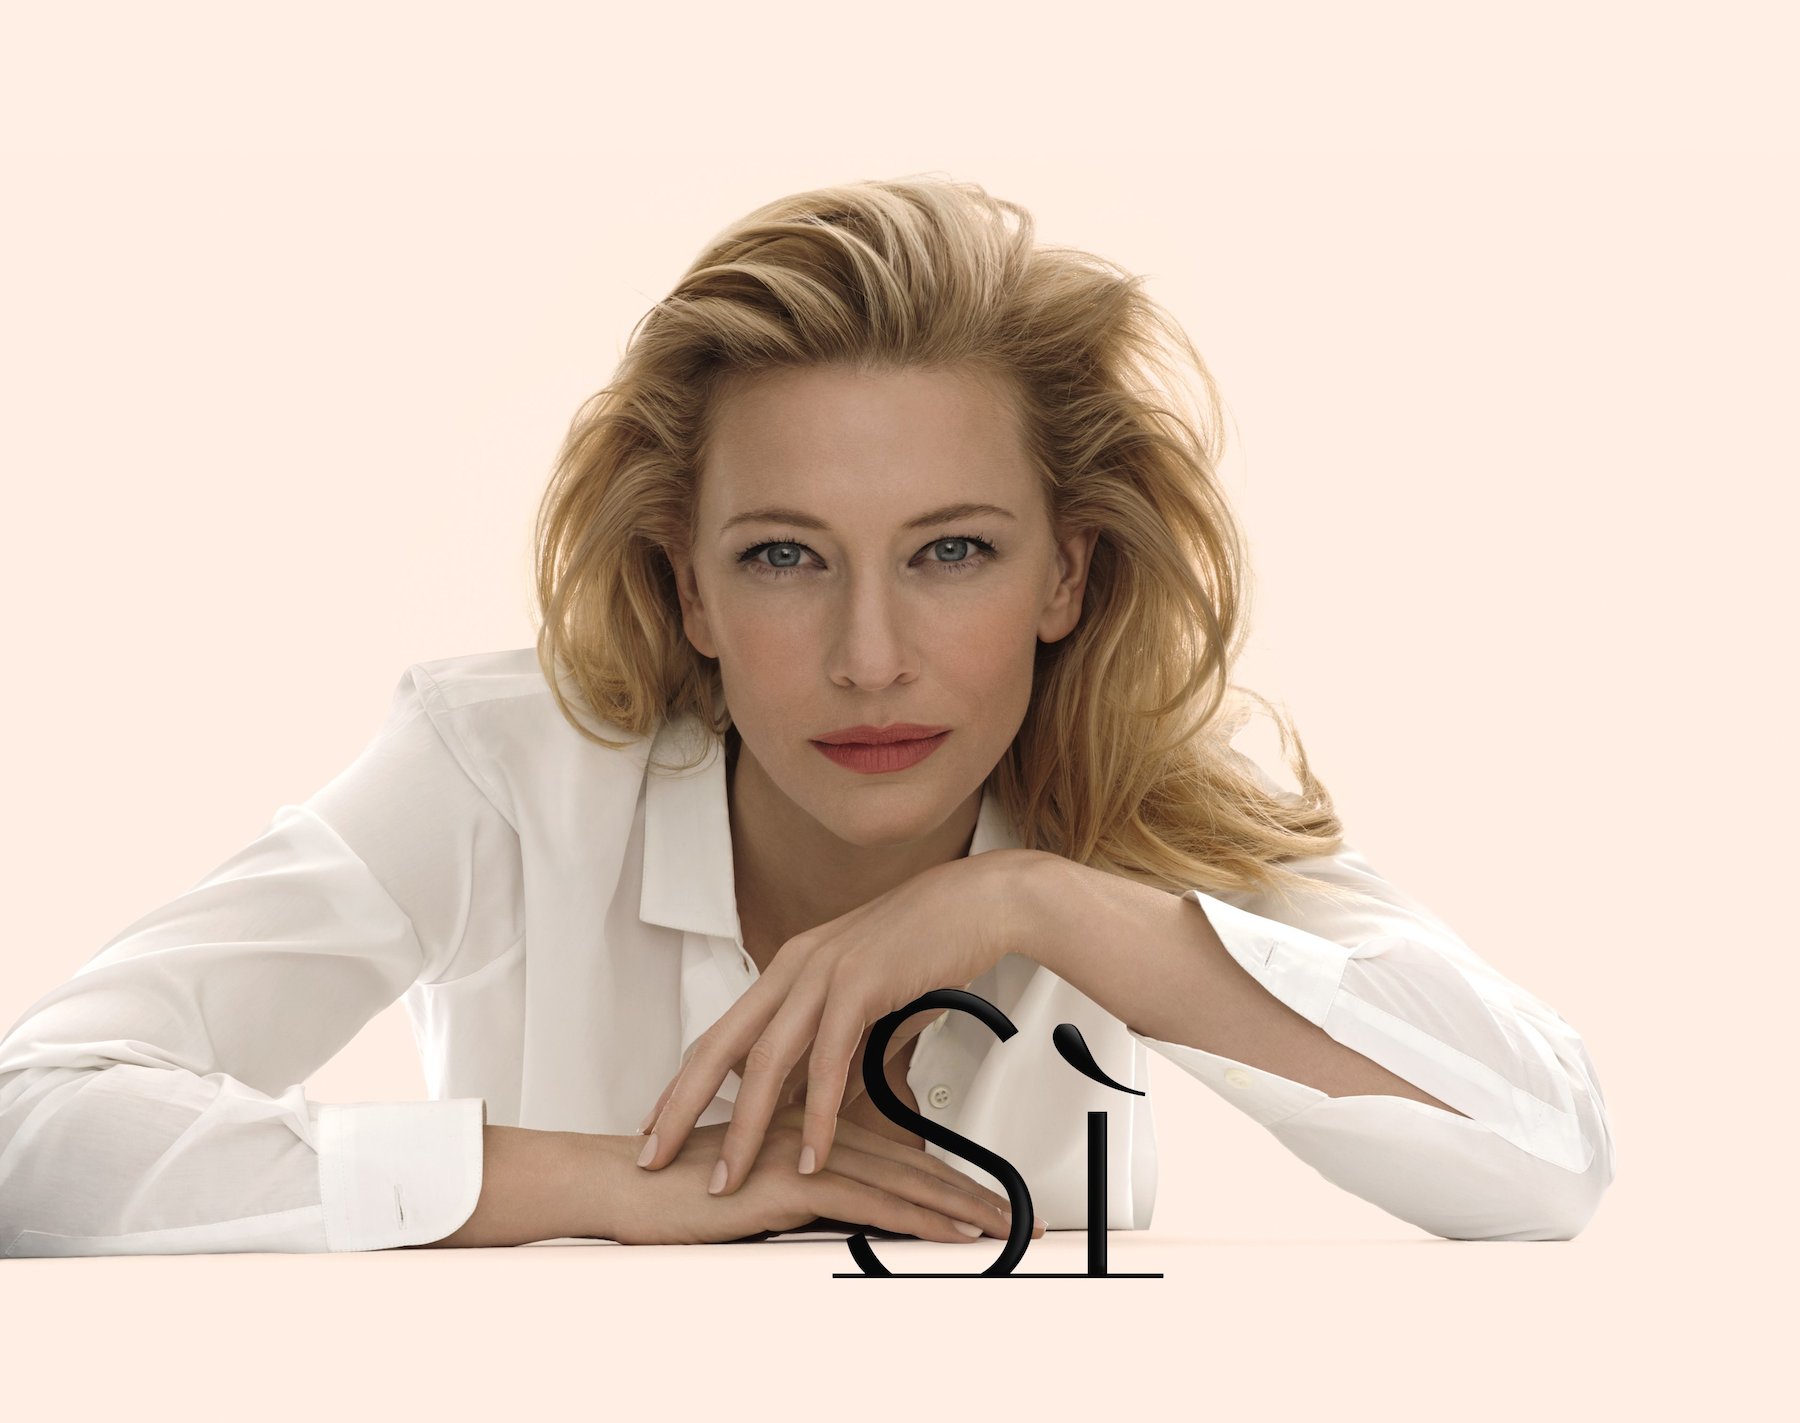 Cate Blanchett Cute In White Shirt